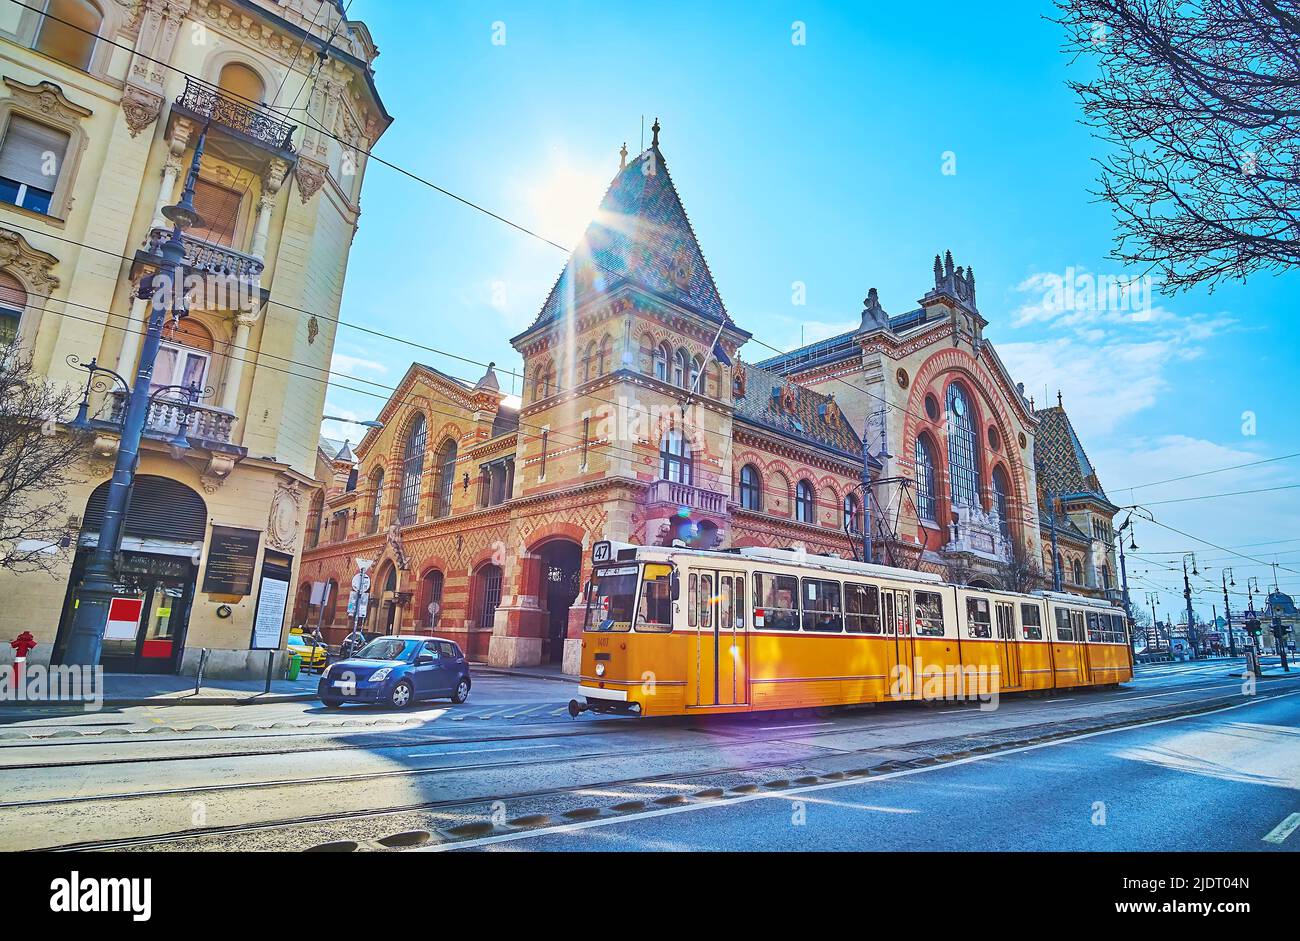 La scena urbana con giro in tram giallo d'epoca, la costruzione del mercato Centrale e il sole luminoso, splendente sul suo tetto, Budapest, Ungheria Foto Stock